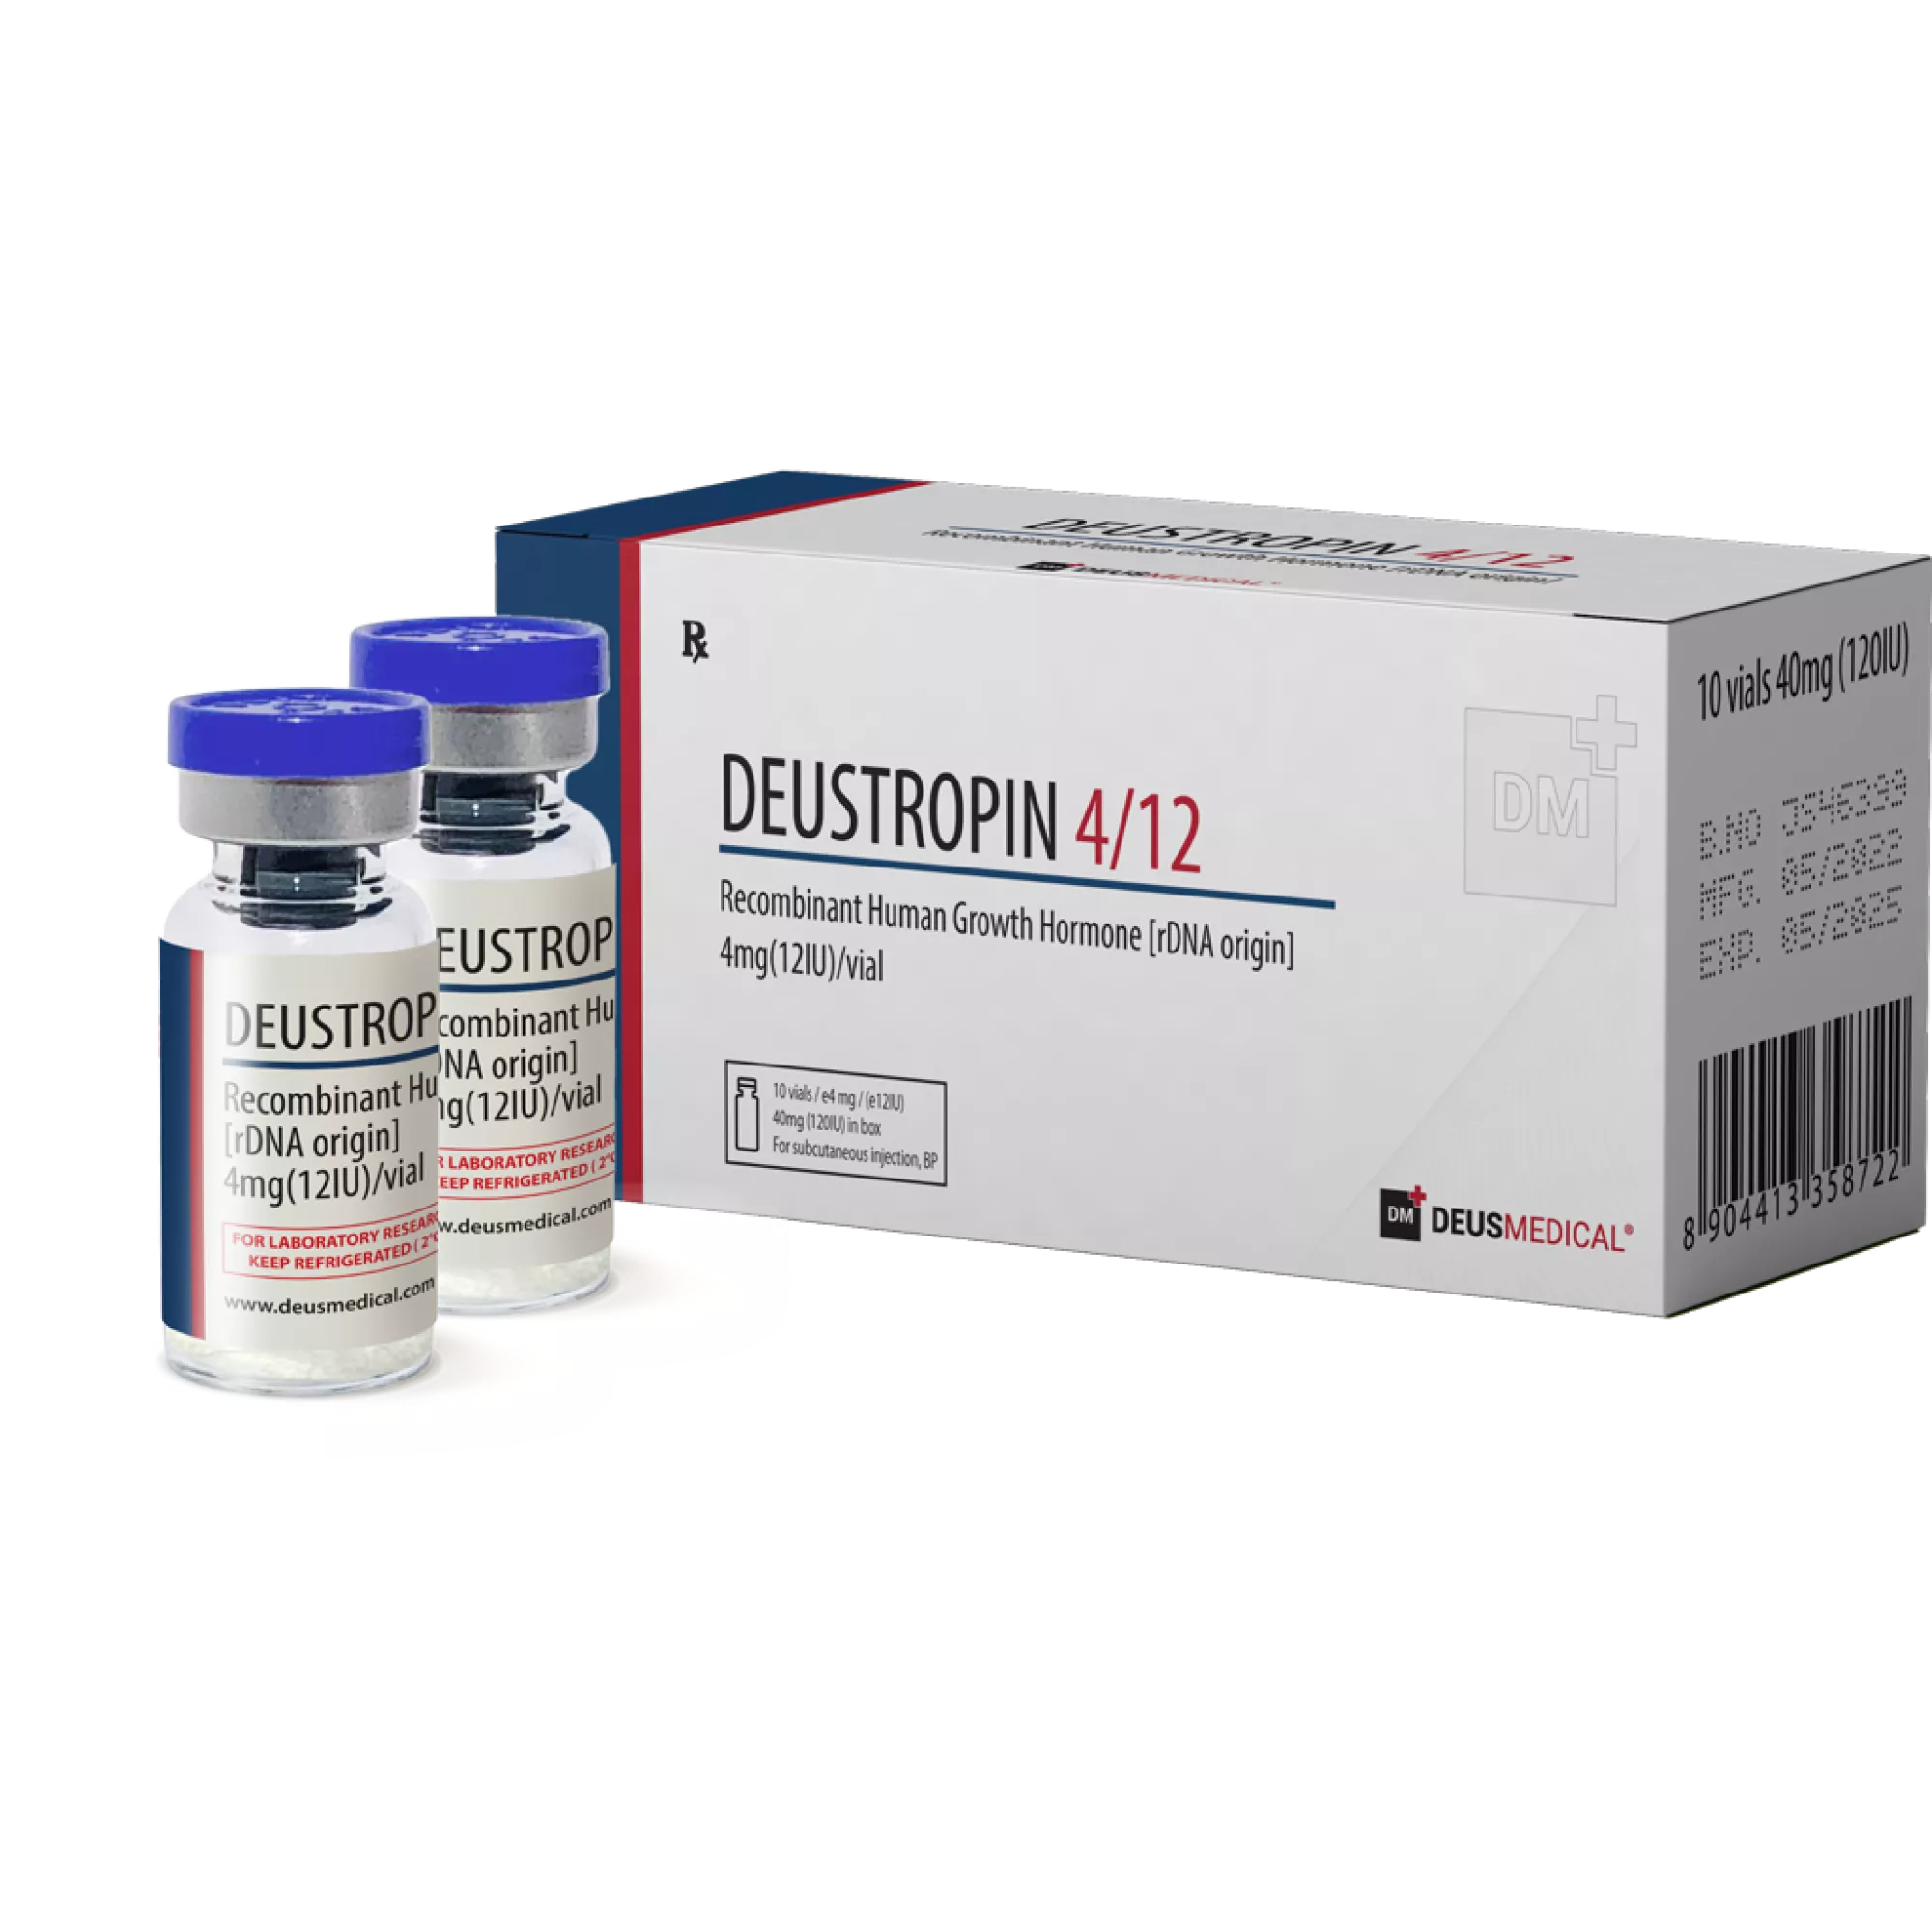 DEUSTROPIN 4/12 (hormona de crecimiento humano recombinante [origen ADNr]), Deus Medical, Comprar esteroides en línea - www.deuspower.shop